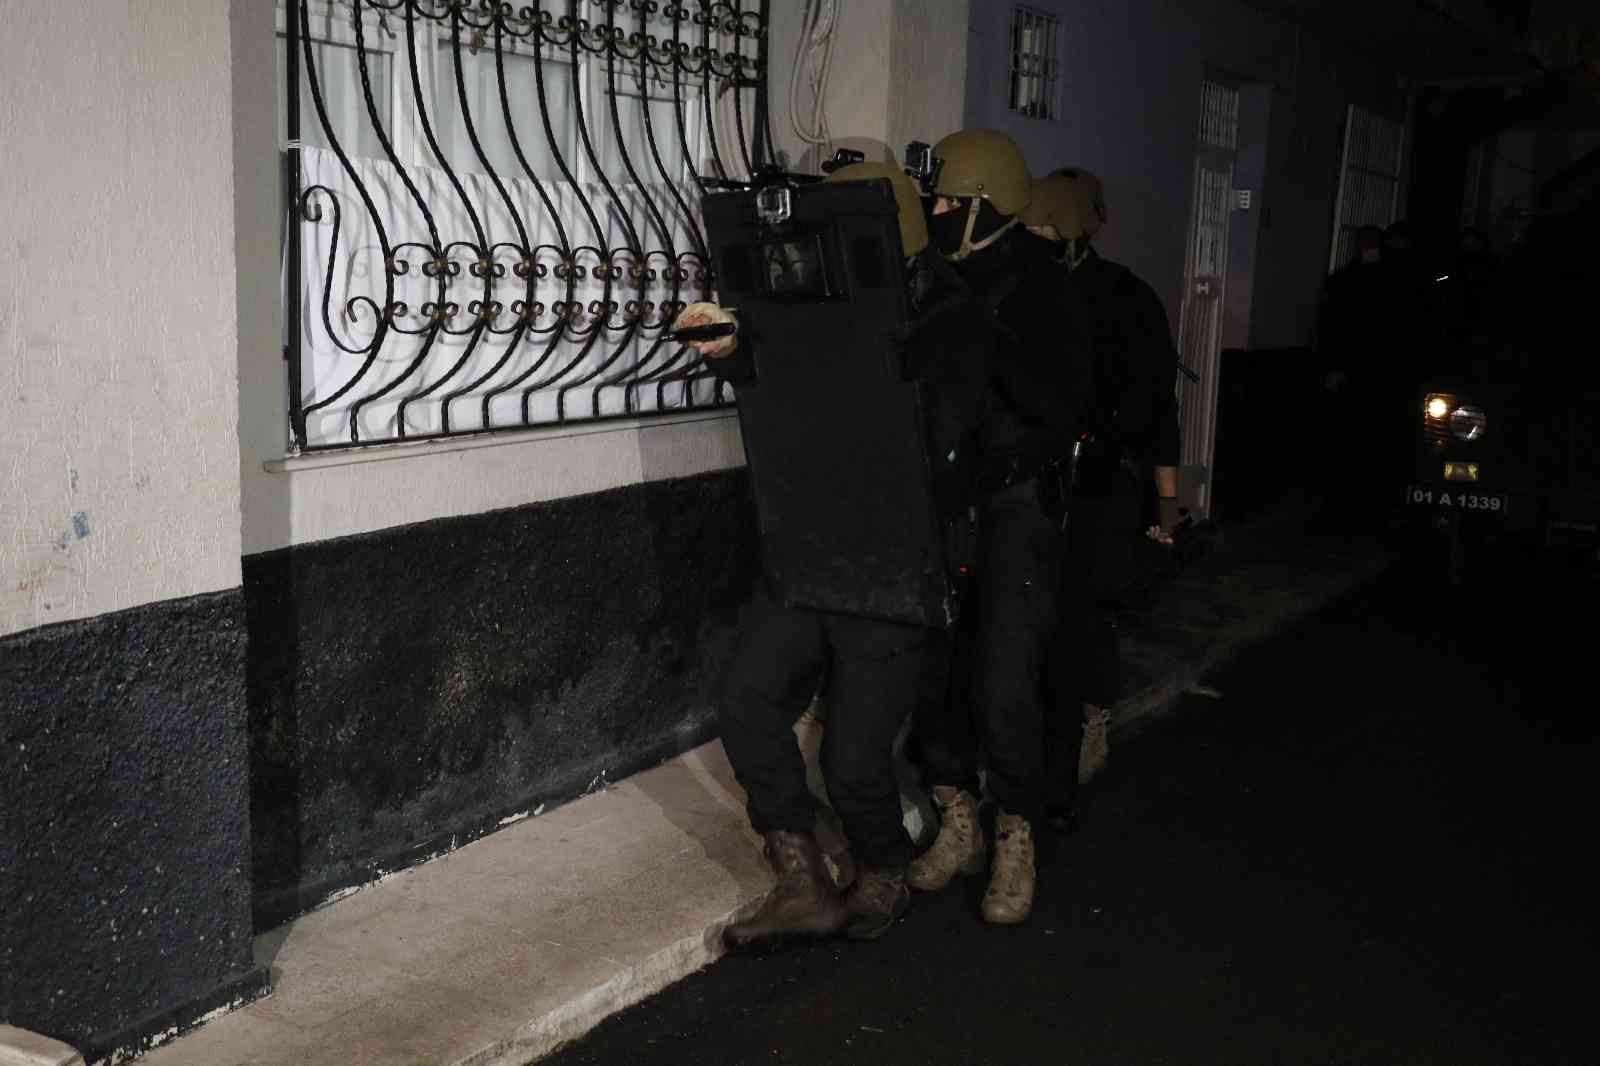 Adana’da PKK/KCK operasyonu: 17 gözaltı kararı #adana